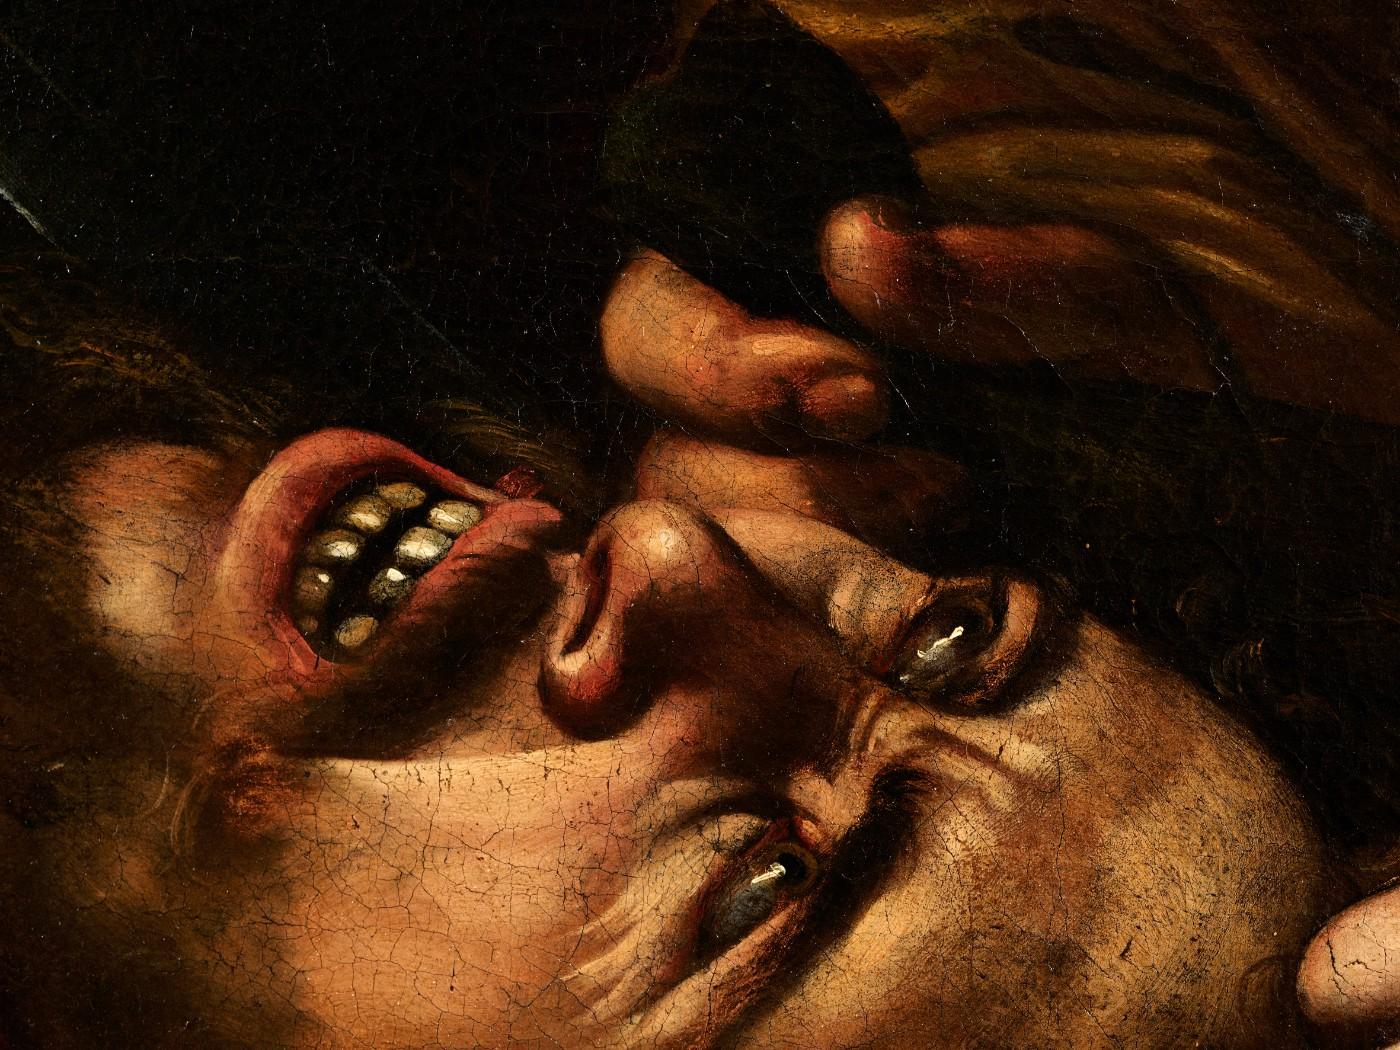 Thiên tài họa sĩ Caravaggio đã tạo ra một tuyệt phẩm nghệ thuật độc đáo. Hãy xem hình ảnh liên quan để được thưởng thức vẻ đẹp của kiệt tác này!